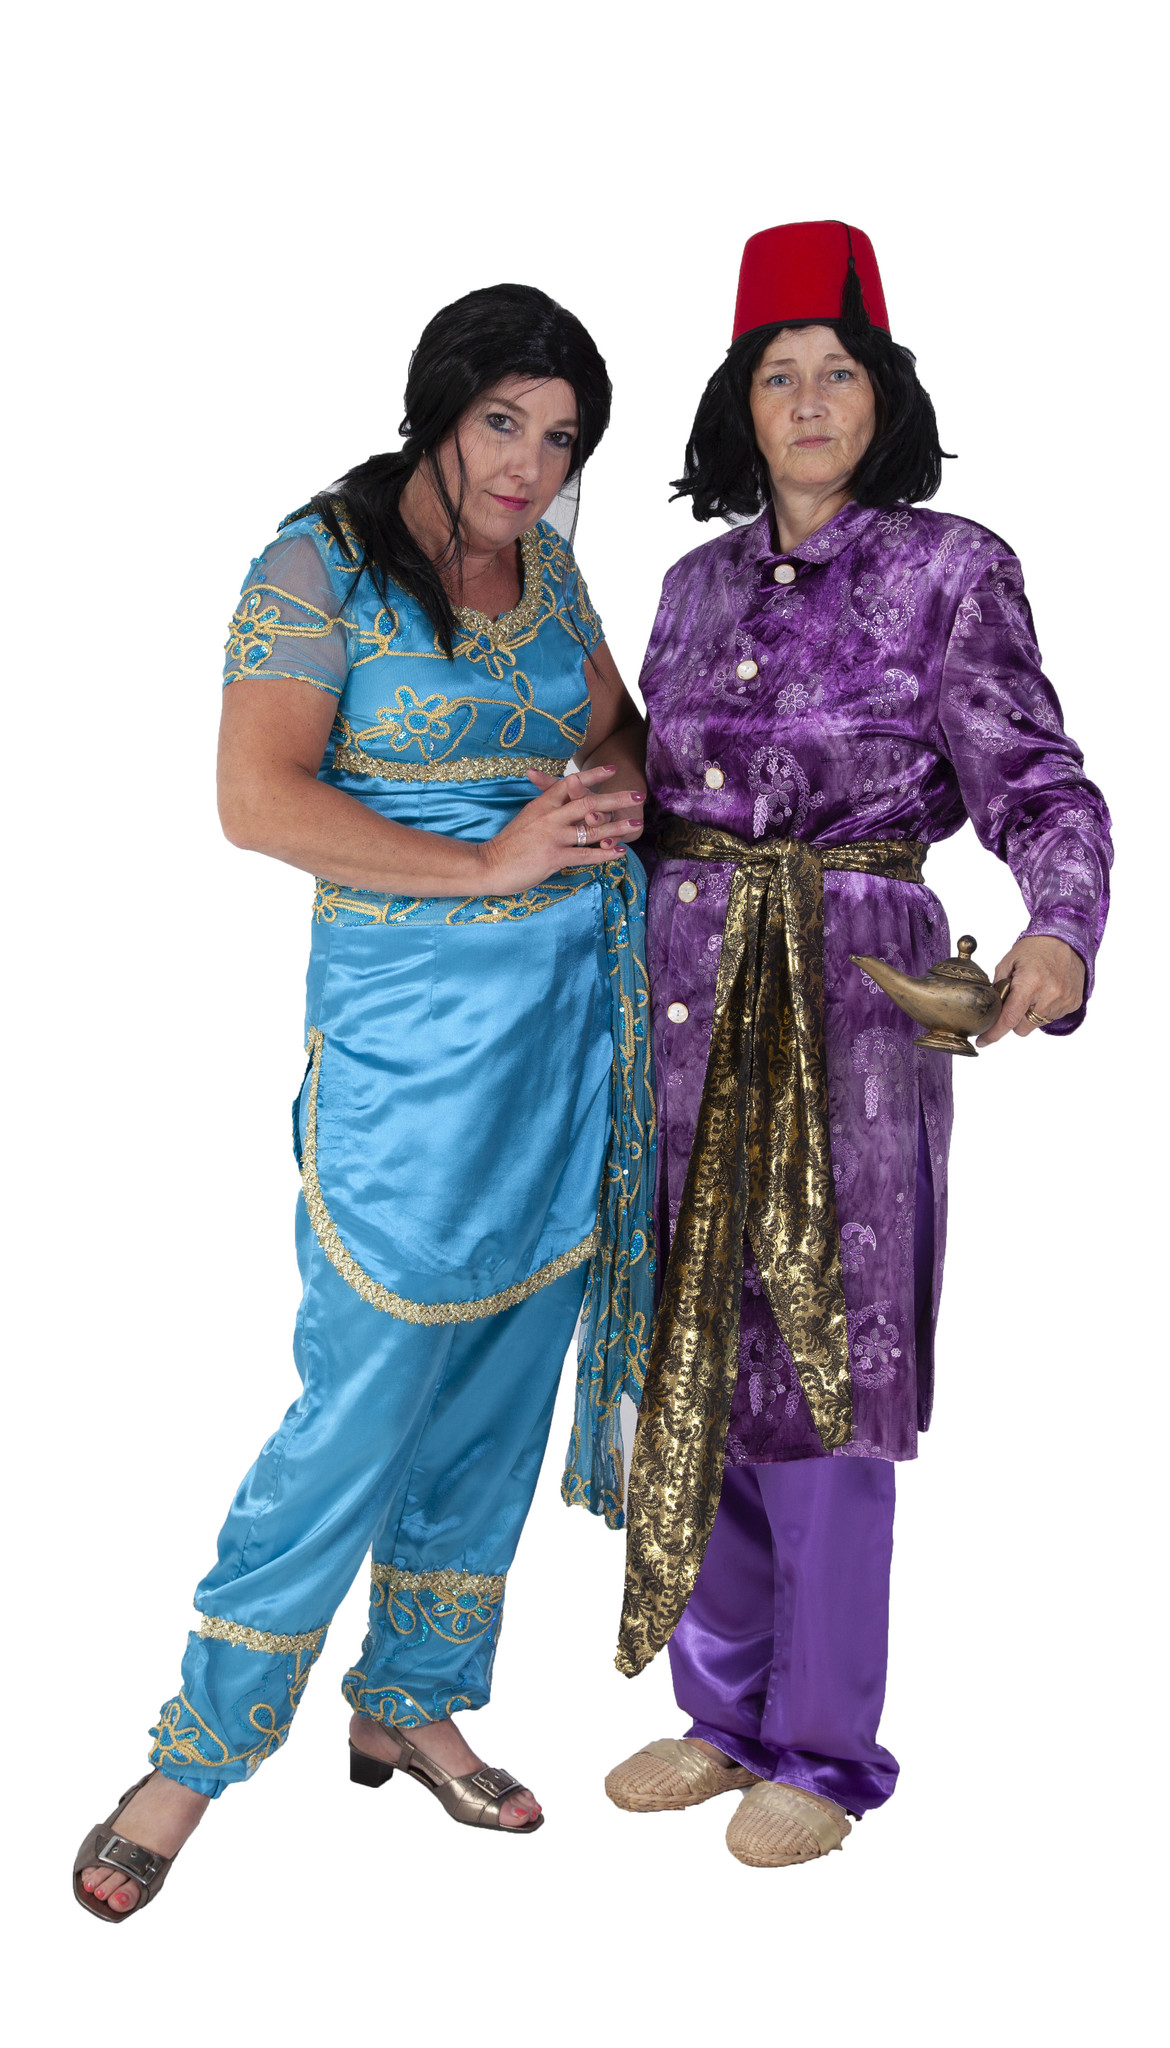 Aladdin & Jasmine outfit - Incognito